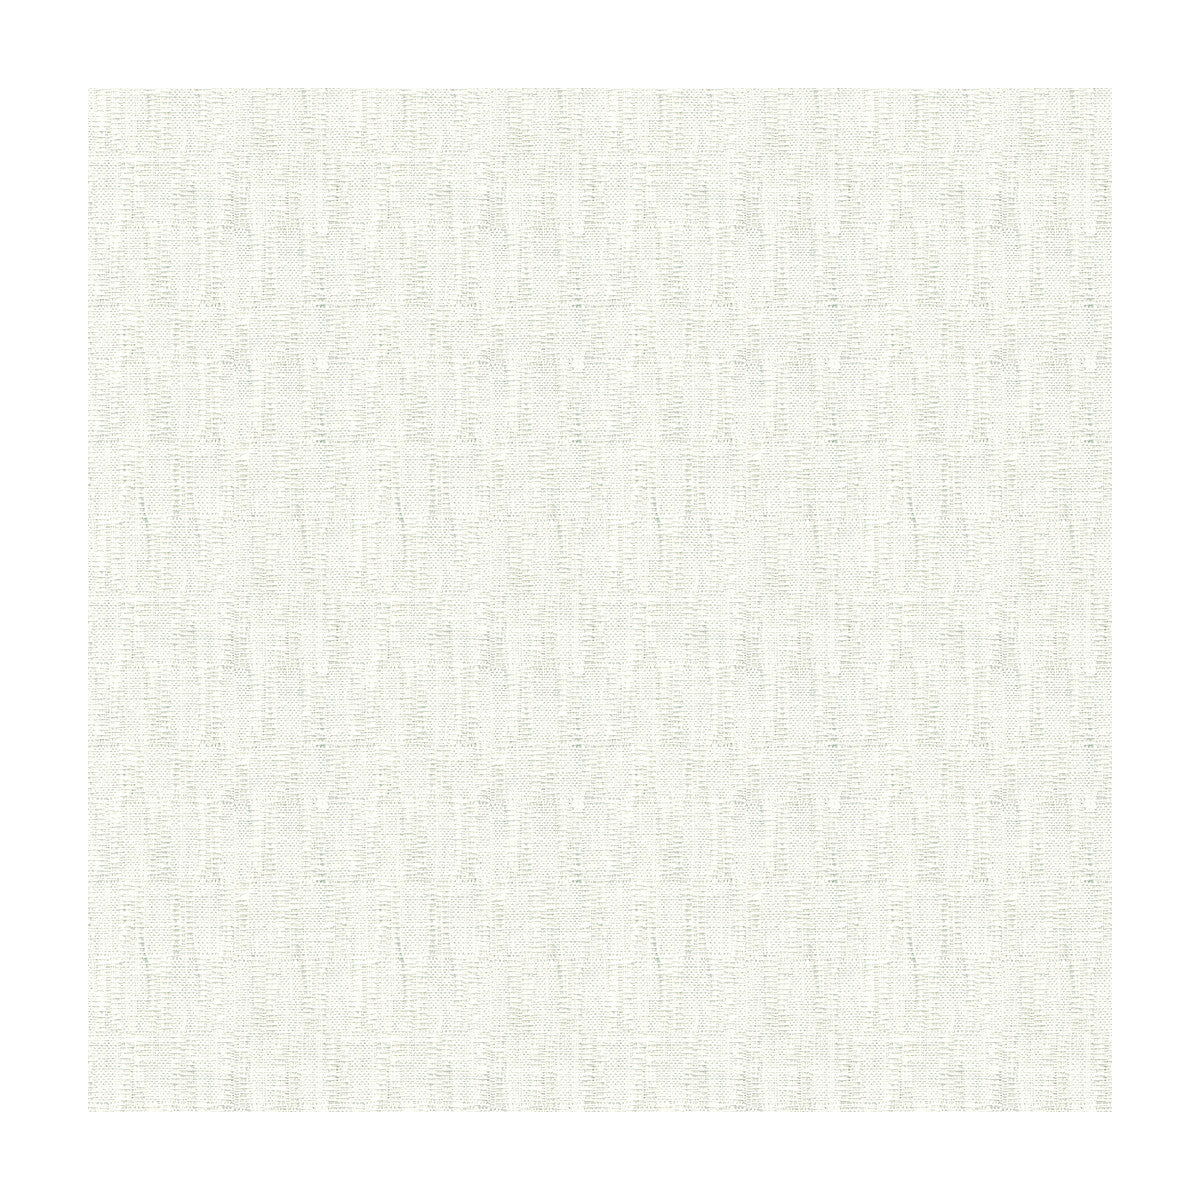 Kravet Basics fabric in 4126-1 color - pattern 4126.1.0 - by Kravet Basics